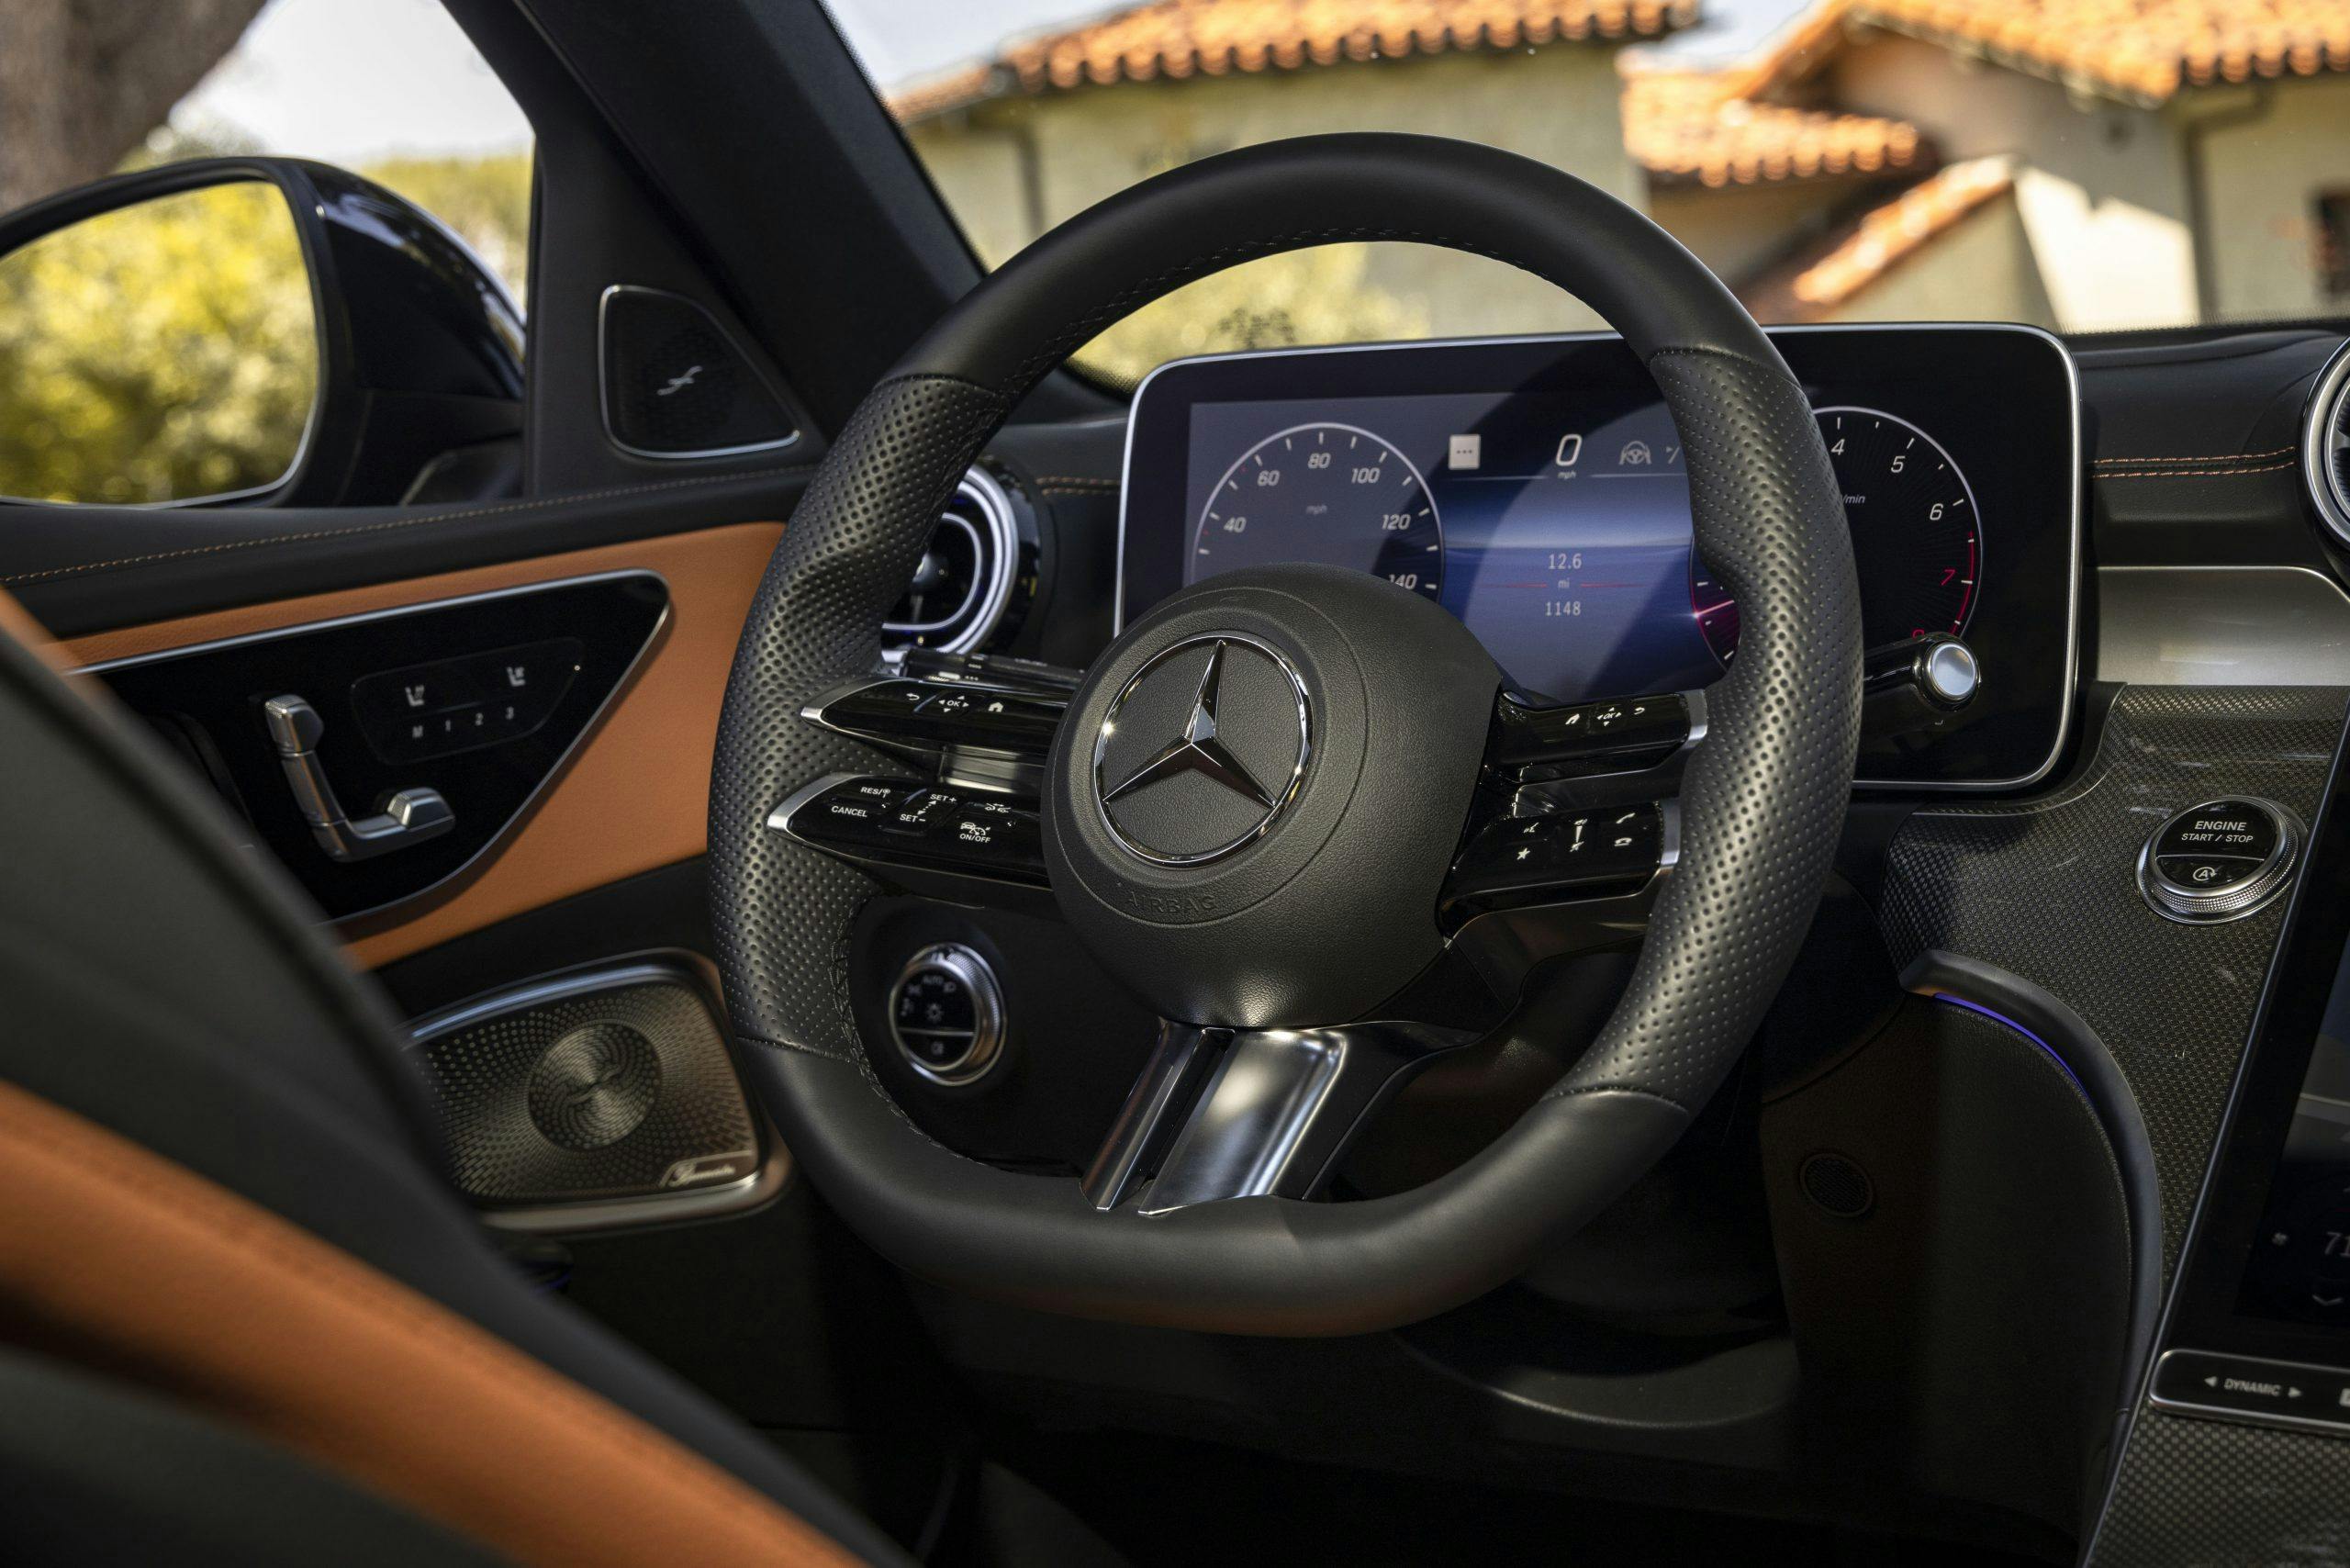 2022 Mercedes-Benz C-Class steering wheel